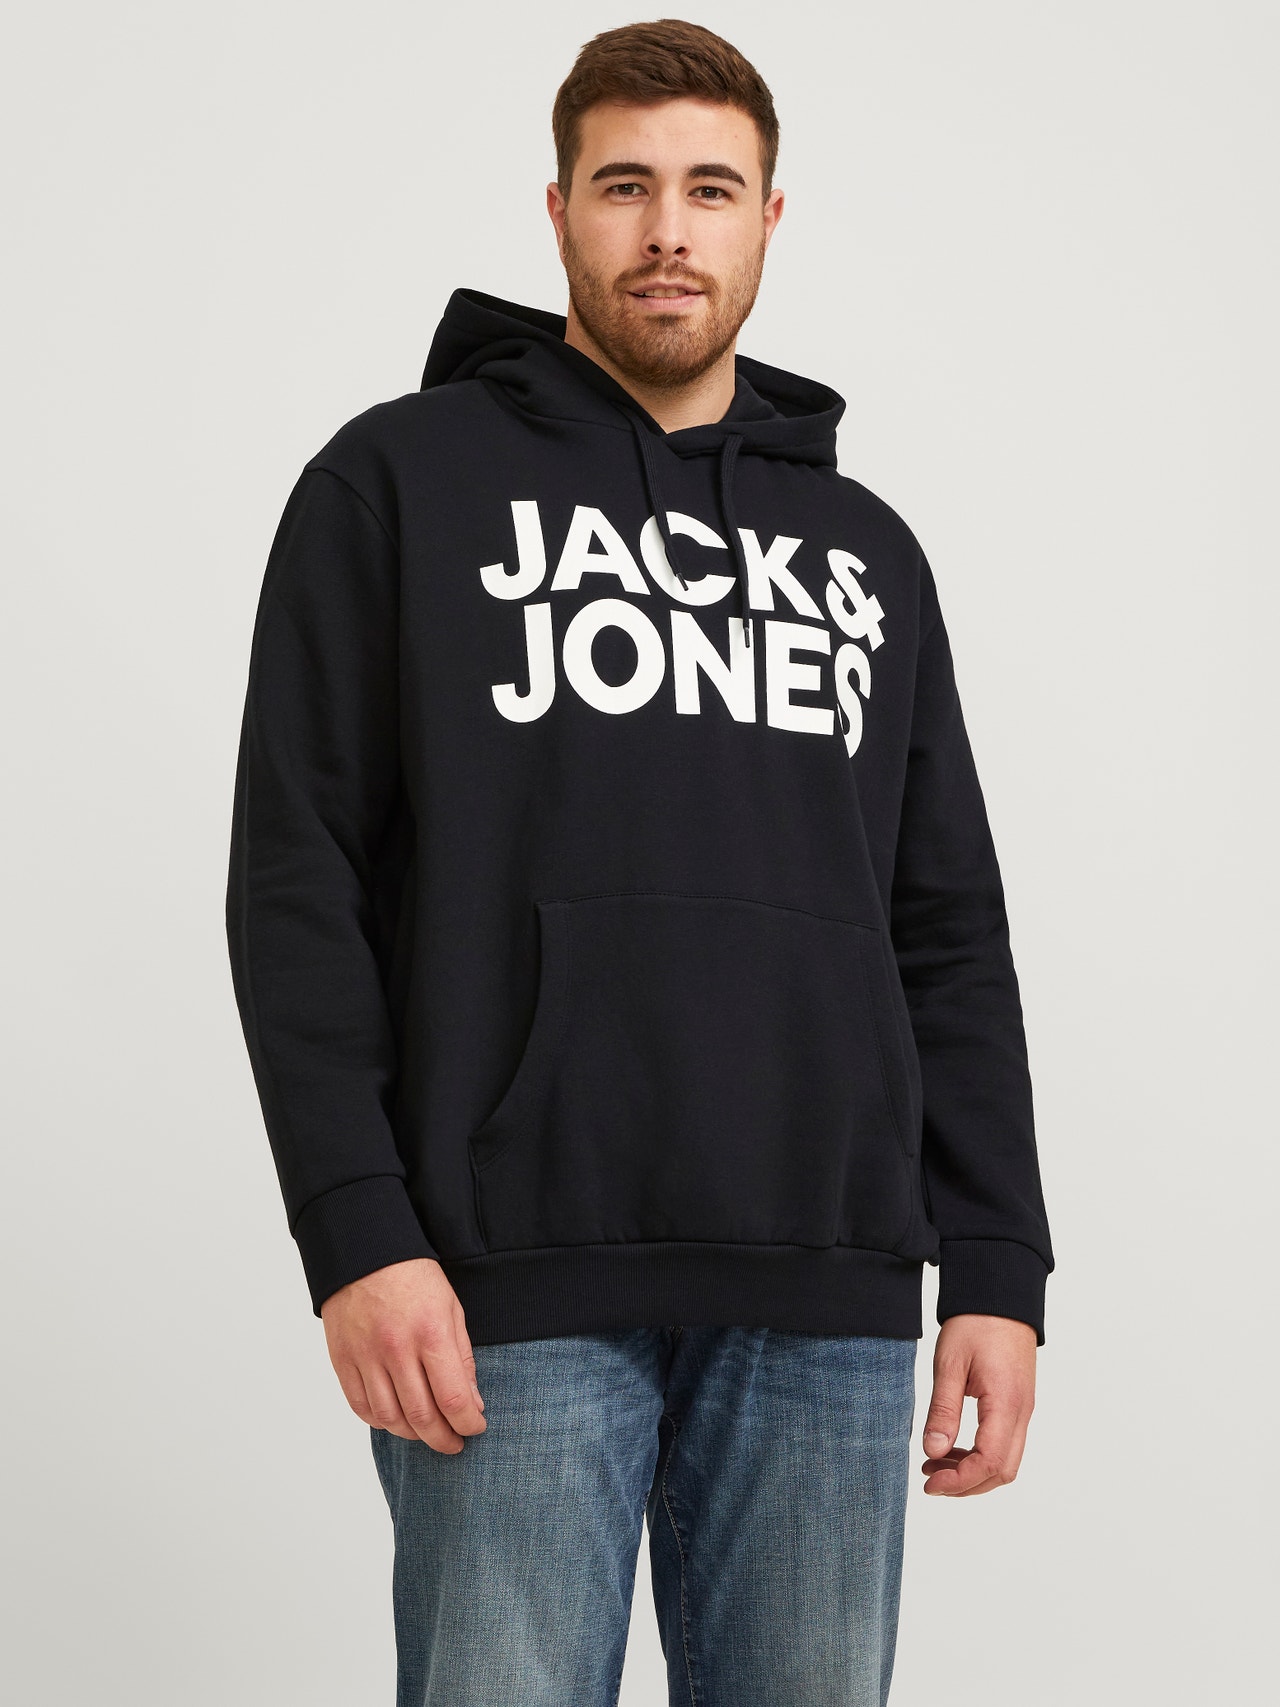 Jack & Jones Plus Size Logo Hettegenser -Black - 12163777